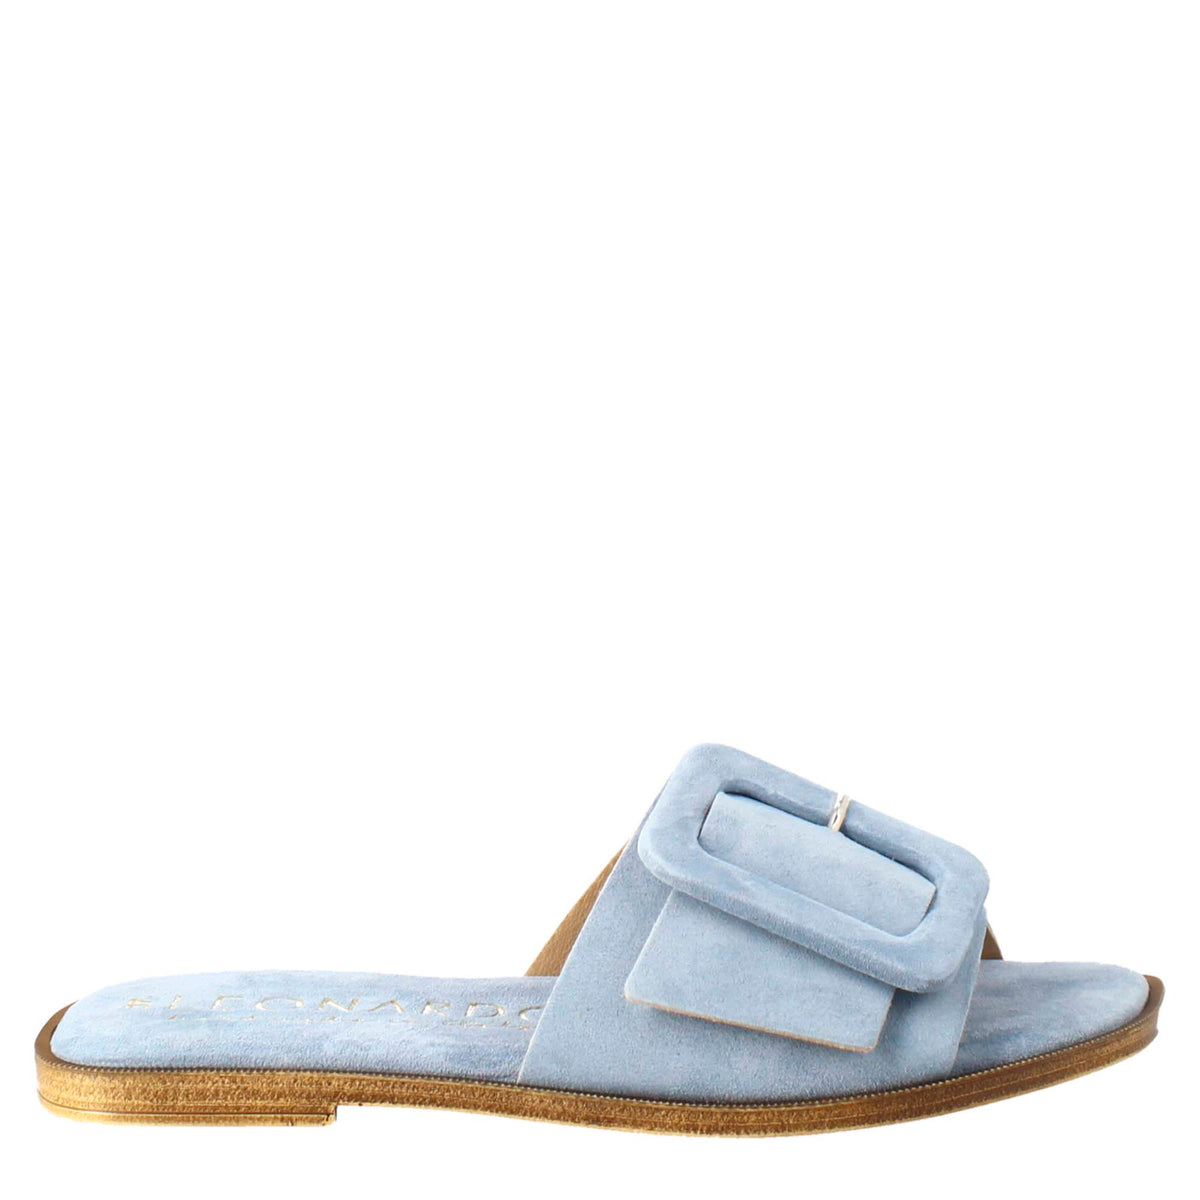 Low women's sandal in light blue suede